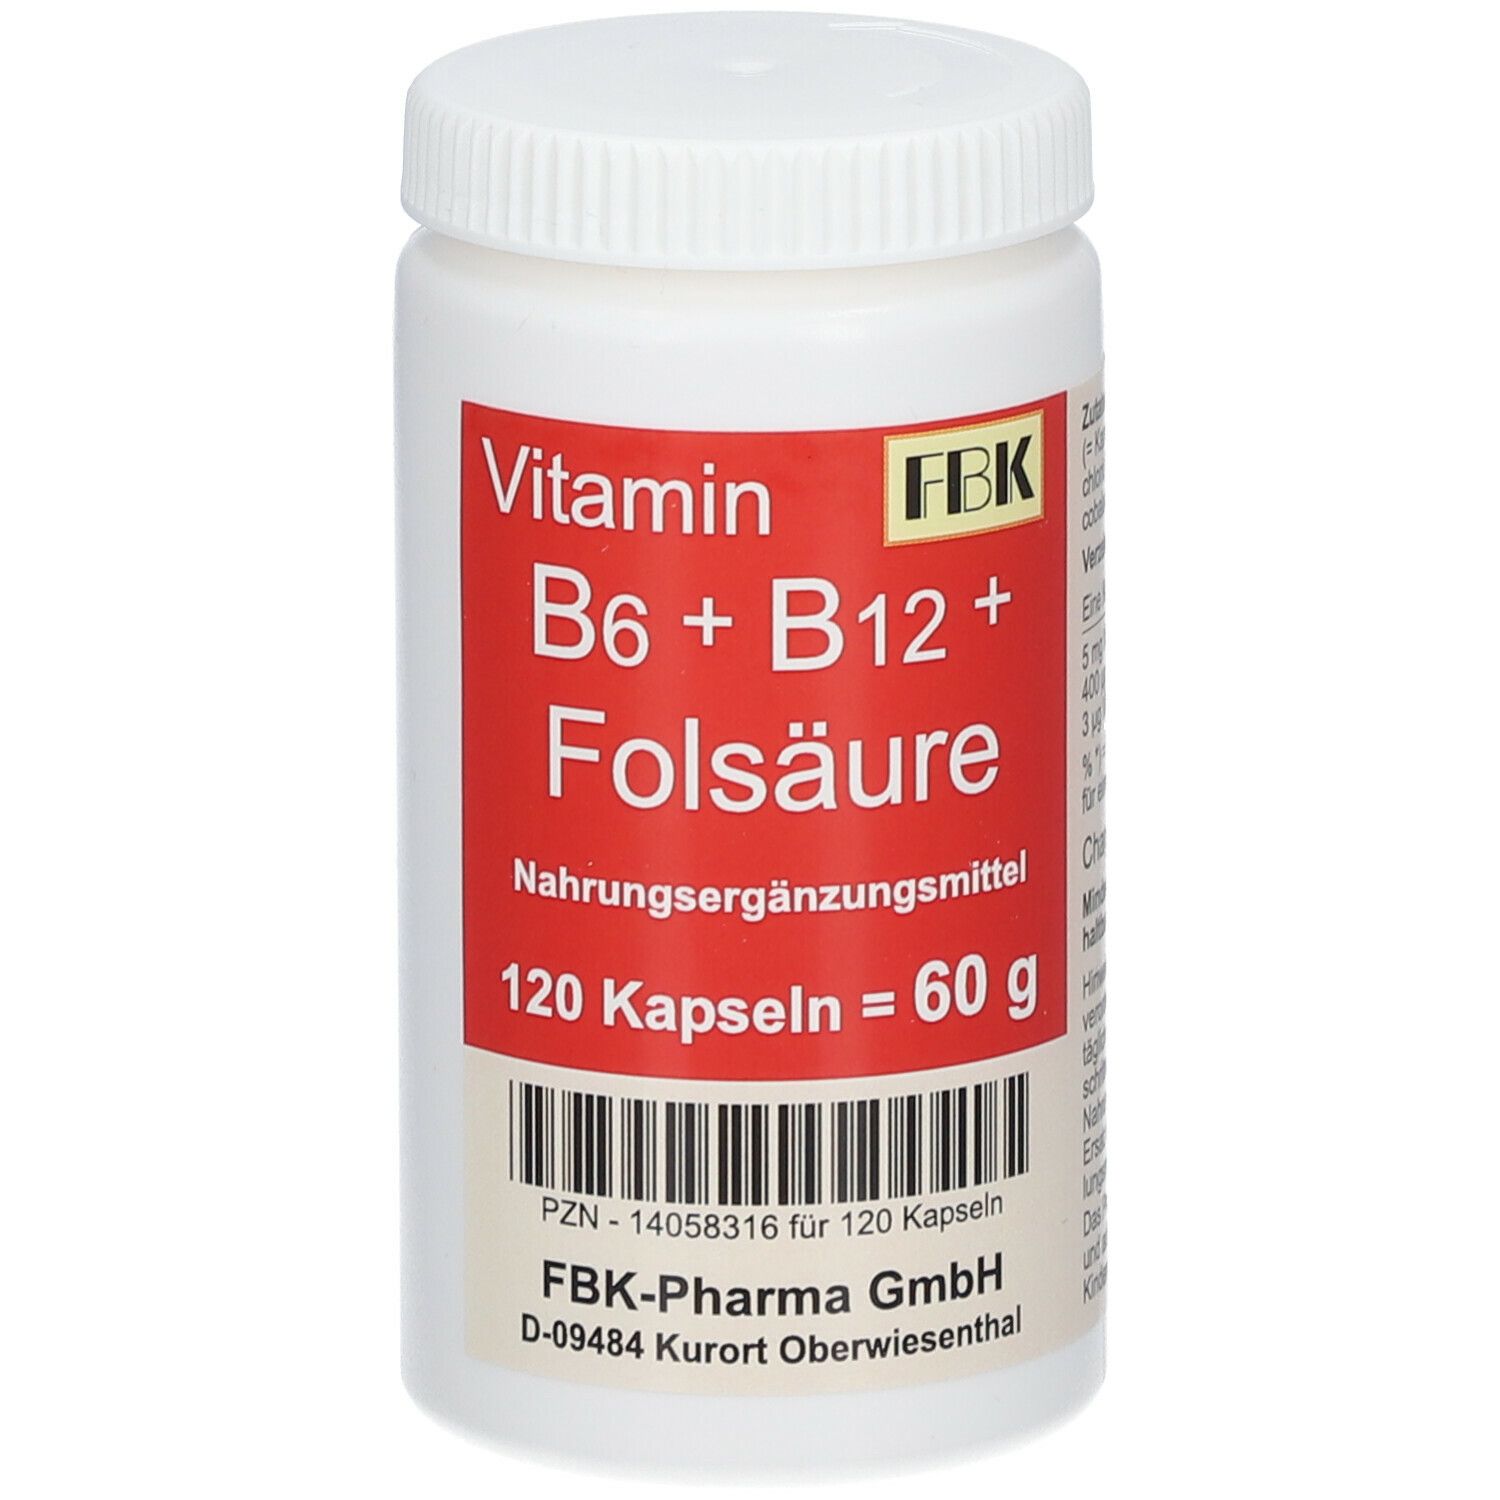 FBK Vitamin B6+ B12+ Folsäure